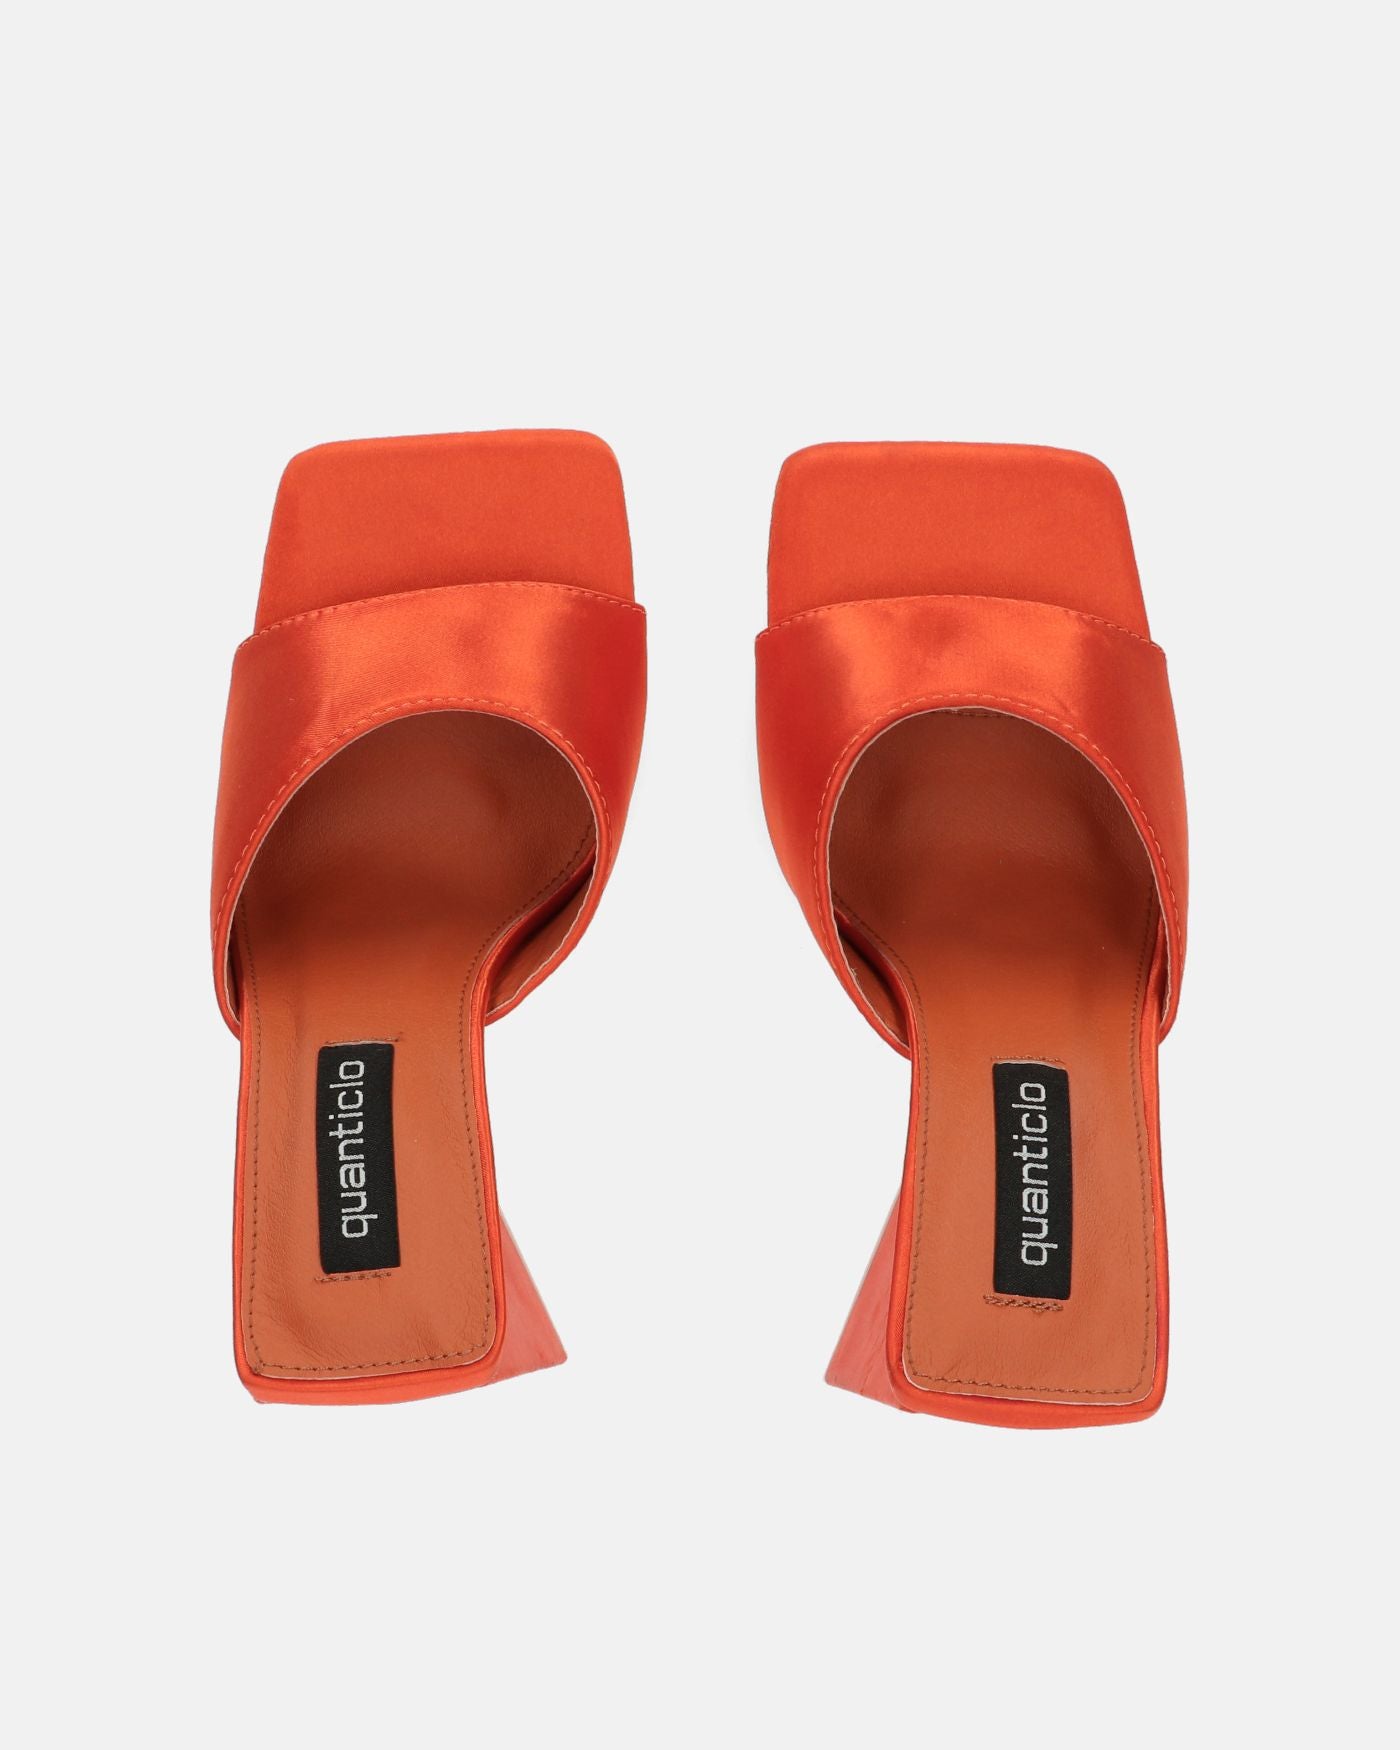 KAMELYA - zapatos de lycra naranja con tacón cuadrado